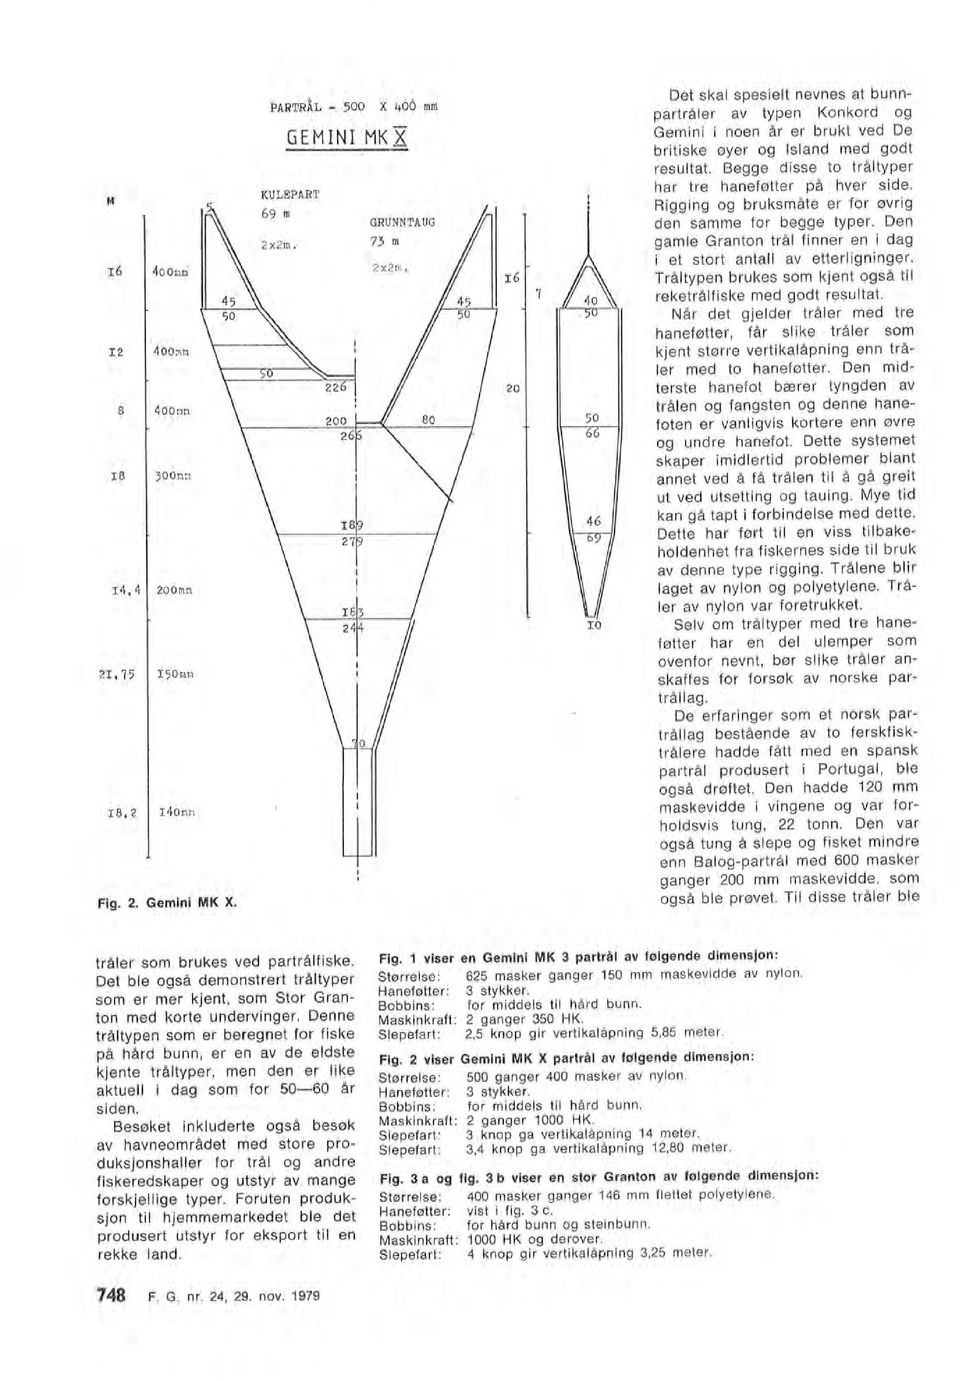 Tråtypen brukes sm kjent gså ti reketråfiske med gdt resutat. Når det gjeder tråer med tre haneføtter, får sike tråer sm tråer sm brukes ved partråfiske. 748 F. G. nr. 24, 29. nv. 1979 Fig. 2. Gemini MK X.